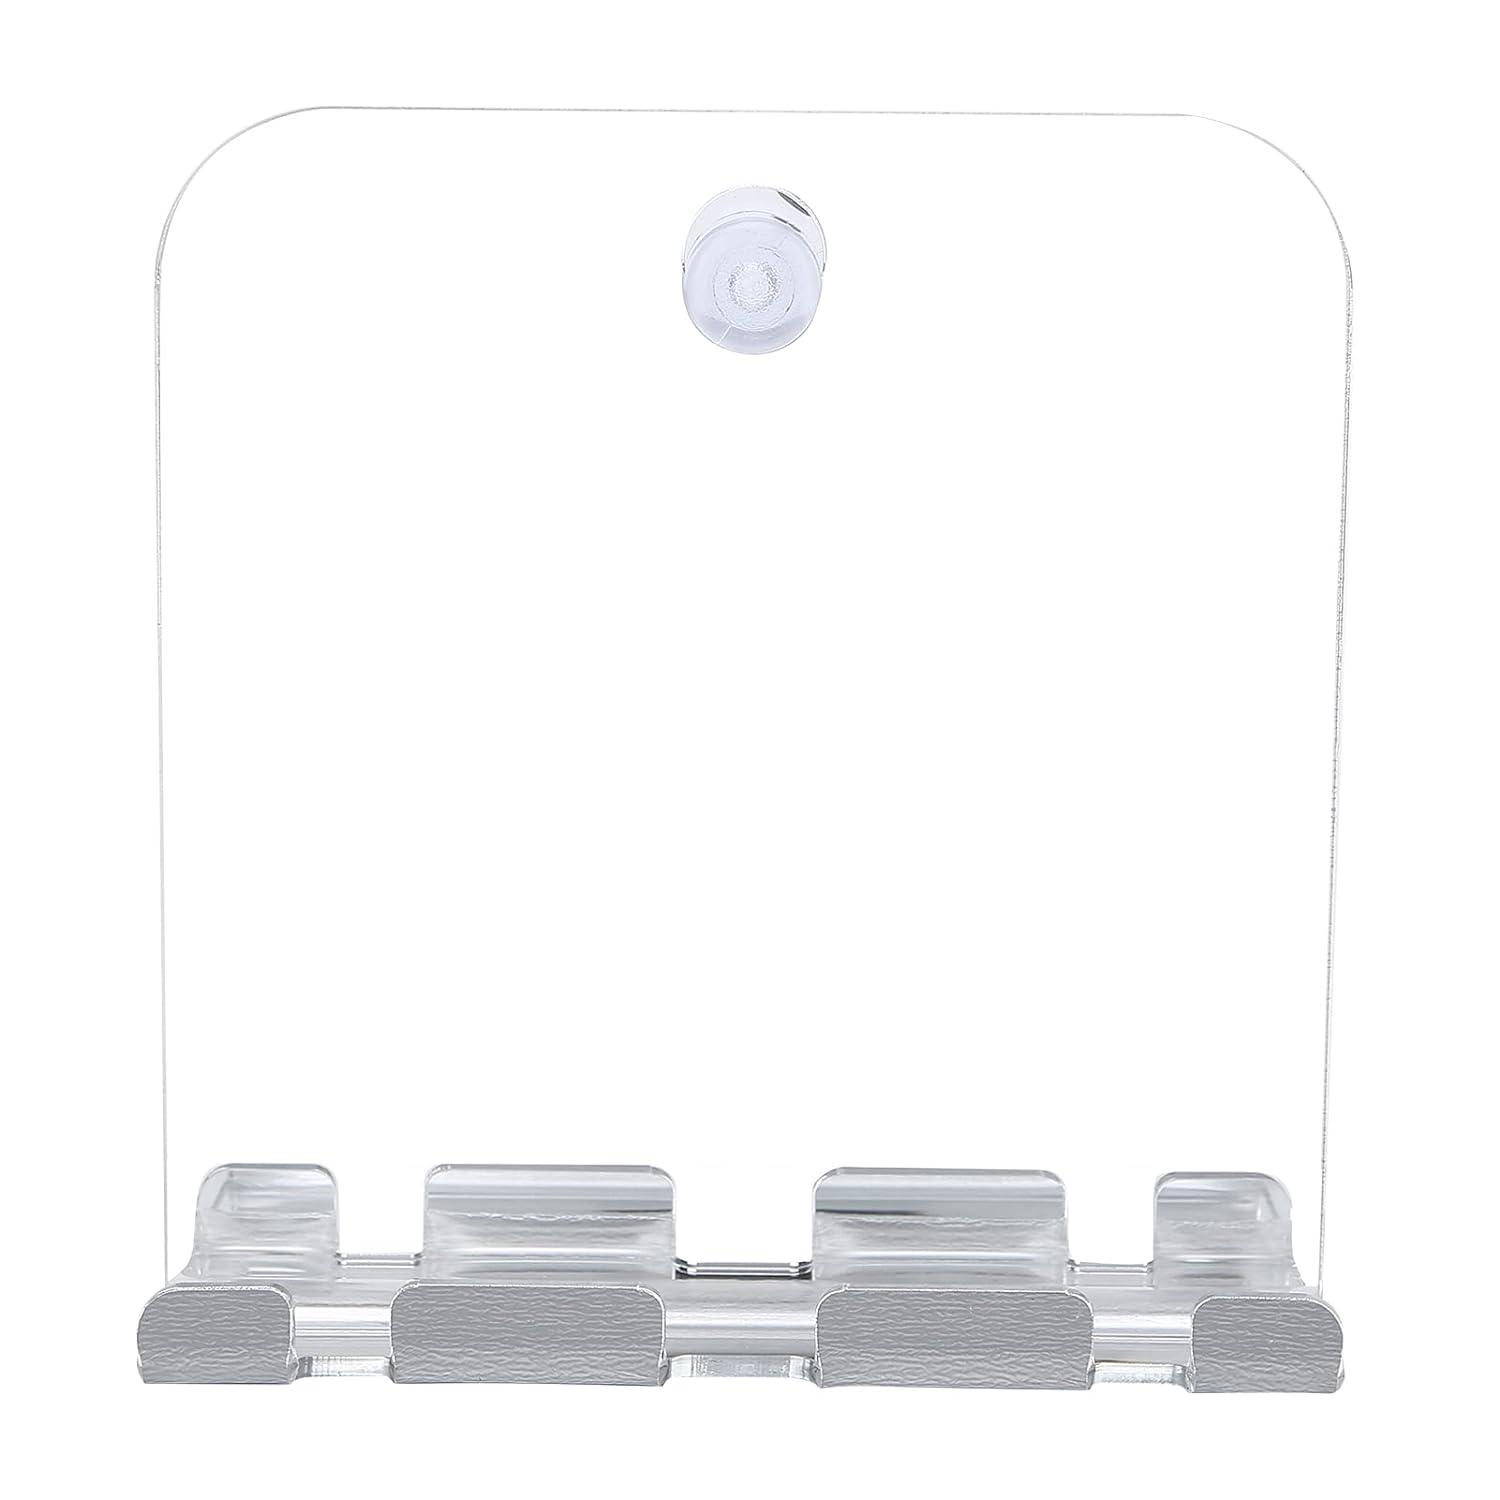 Espejo de ducha sin niebla para afeitar diseño inastillable y antivaho espejo - VIRTUAL MUEBLES